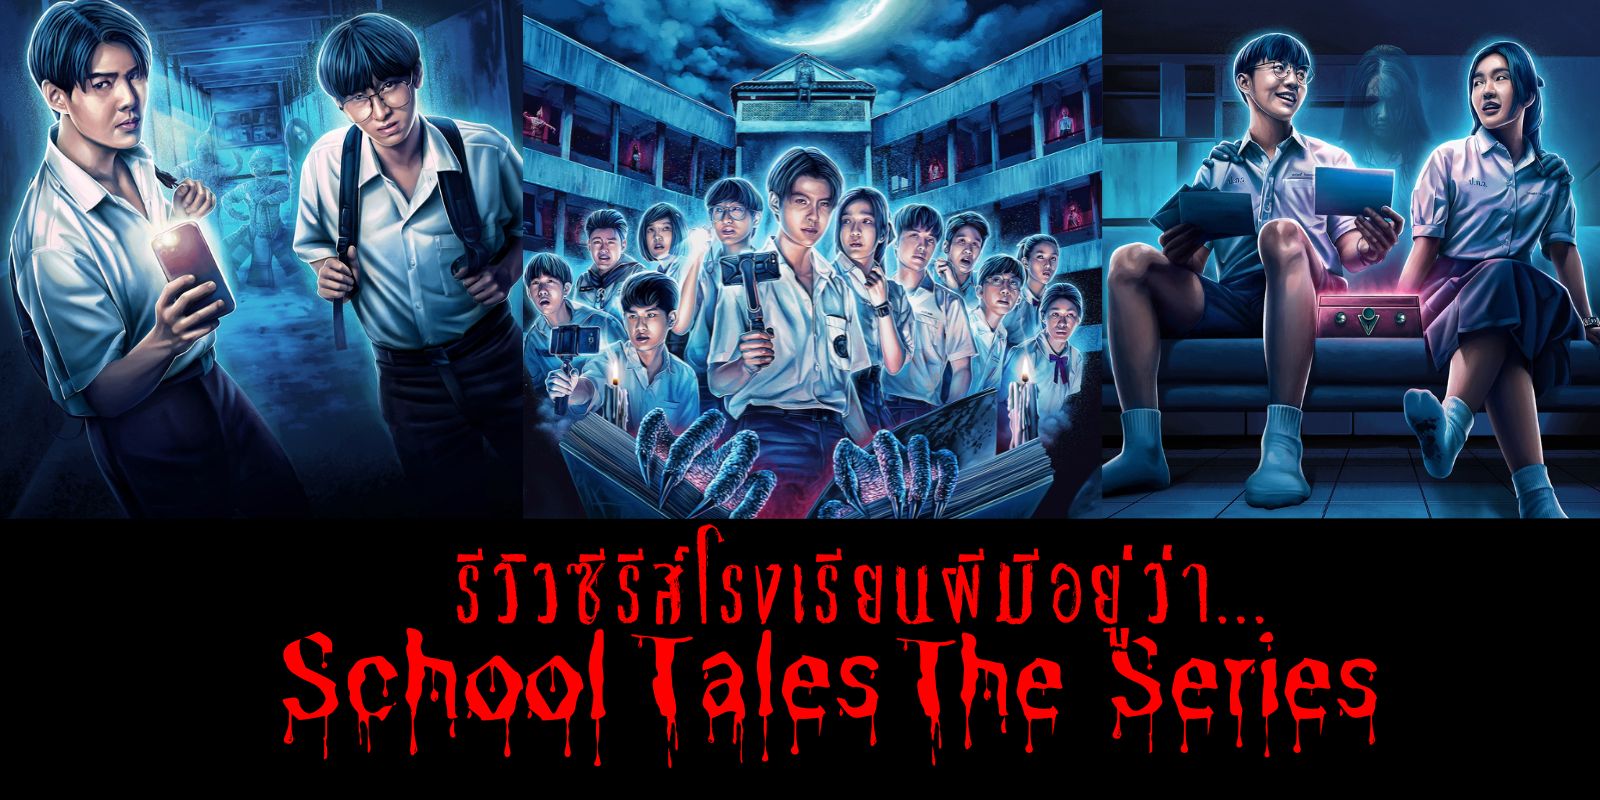  ç¹ School Tales The Series º Netflix |  TrueID Creator